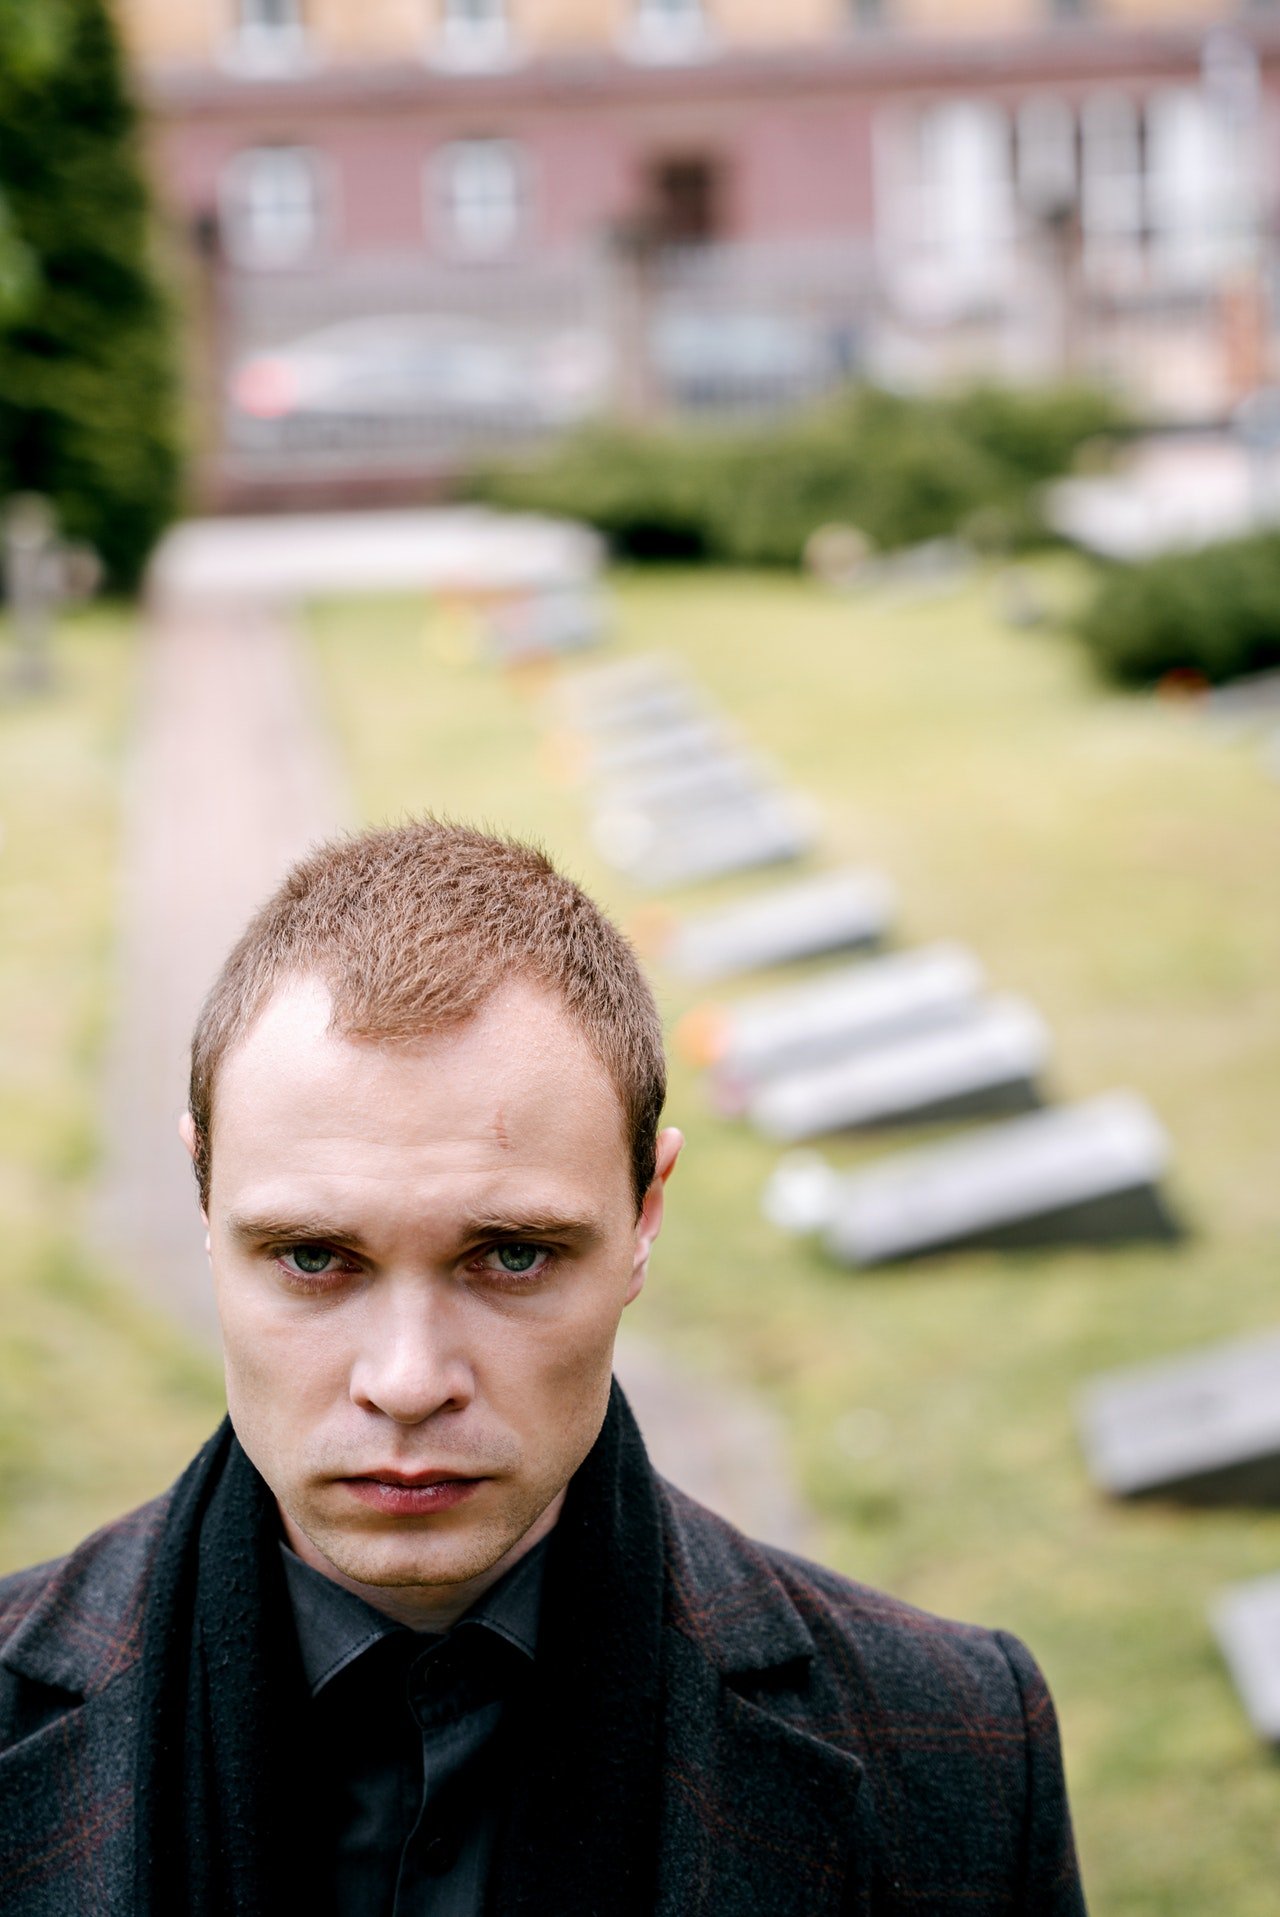 Un hombre con rostro serio y ropa oscura en un cementerio. | Foto: Pexels